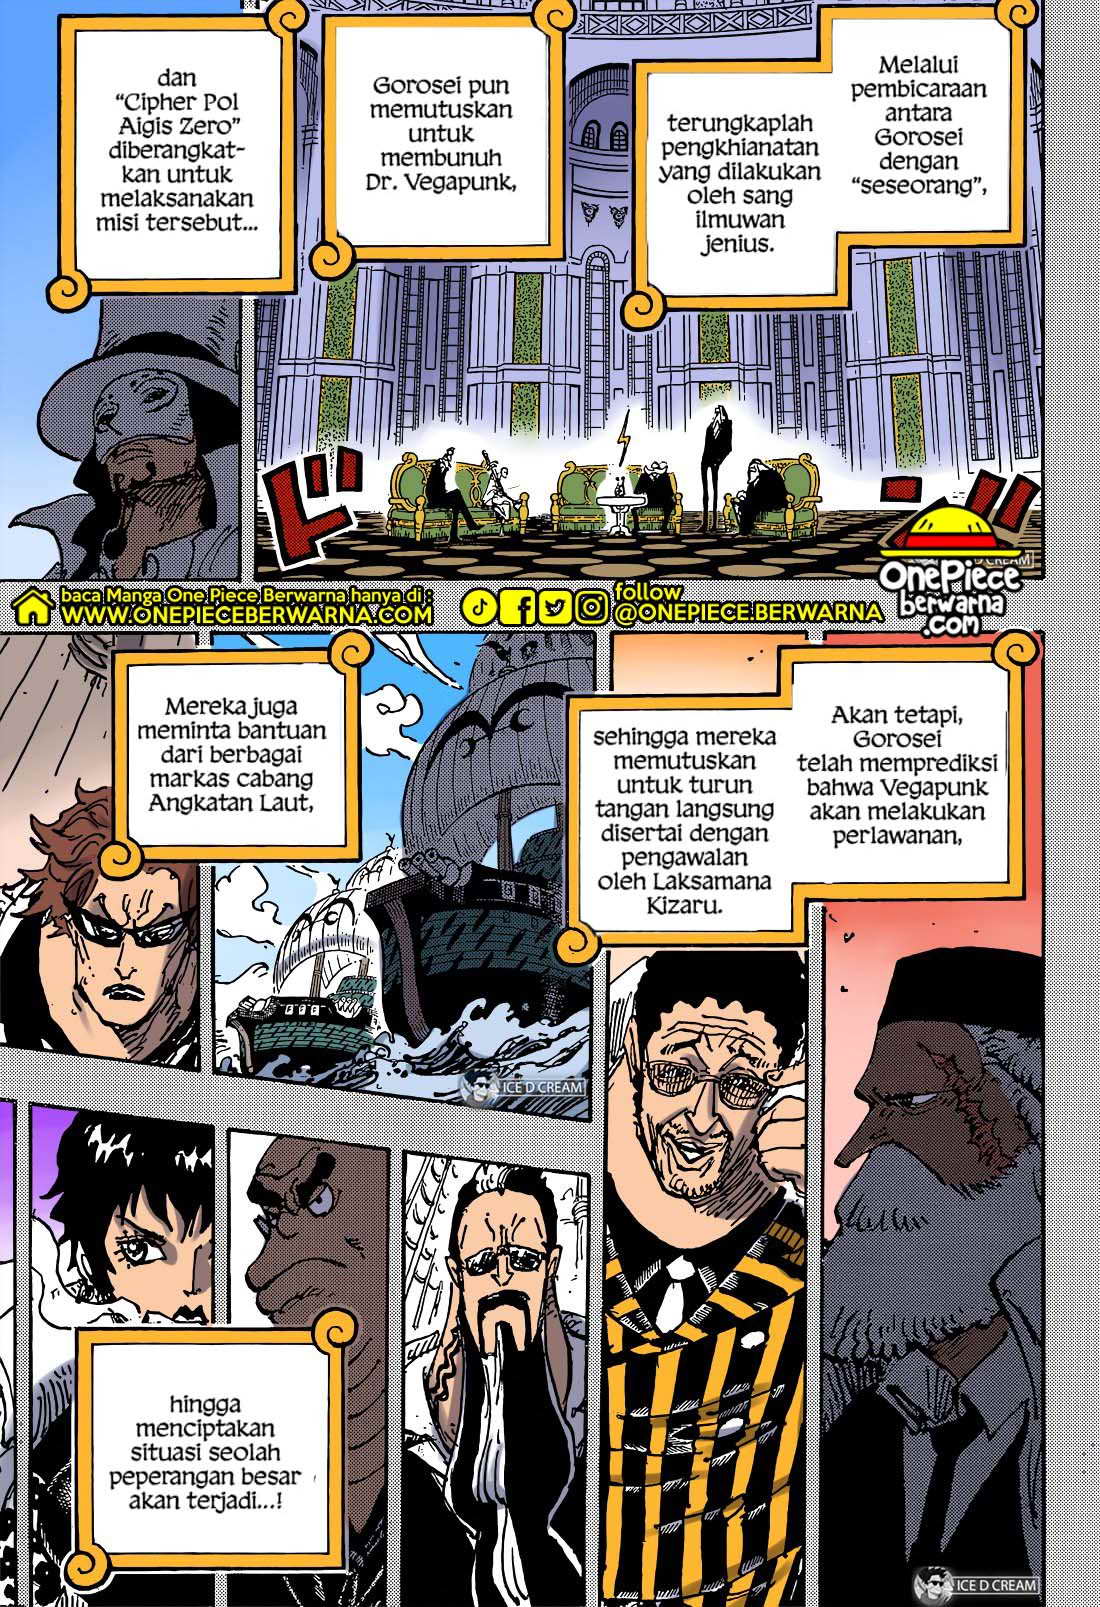 Baca manga komik One Piece Berwarna Bahasa Indonesia HD Chapter 1078